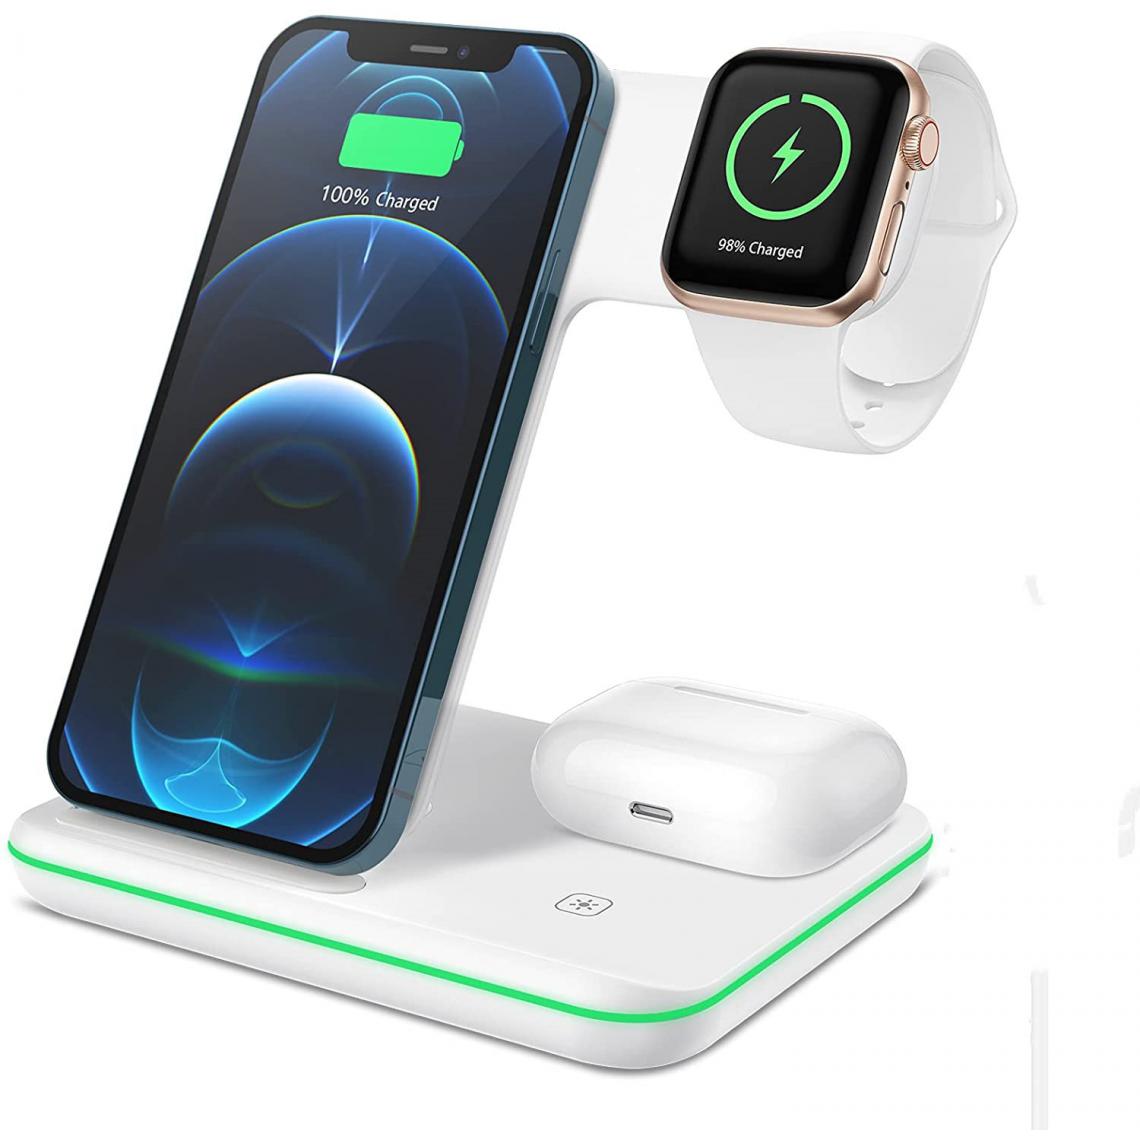 Chrono - Chargeur sans fil, station de charge rapide certifiée Qi 3 en 1 compatible avec Apple Watch SE/6/5/4/3/2/AirPods 2/Pro, chargeur sans fil pour iPhone 12/11/Pro Max/XS/XS Max/XR /X/8/8P/Samsung S20/S10,(blanc) - Chargeur secteur téléphone